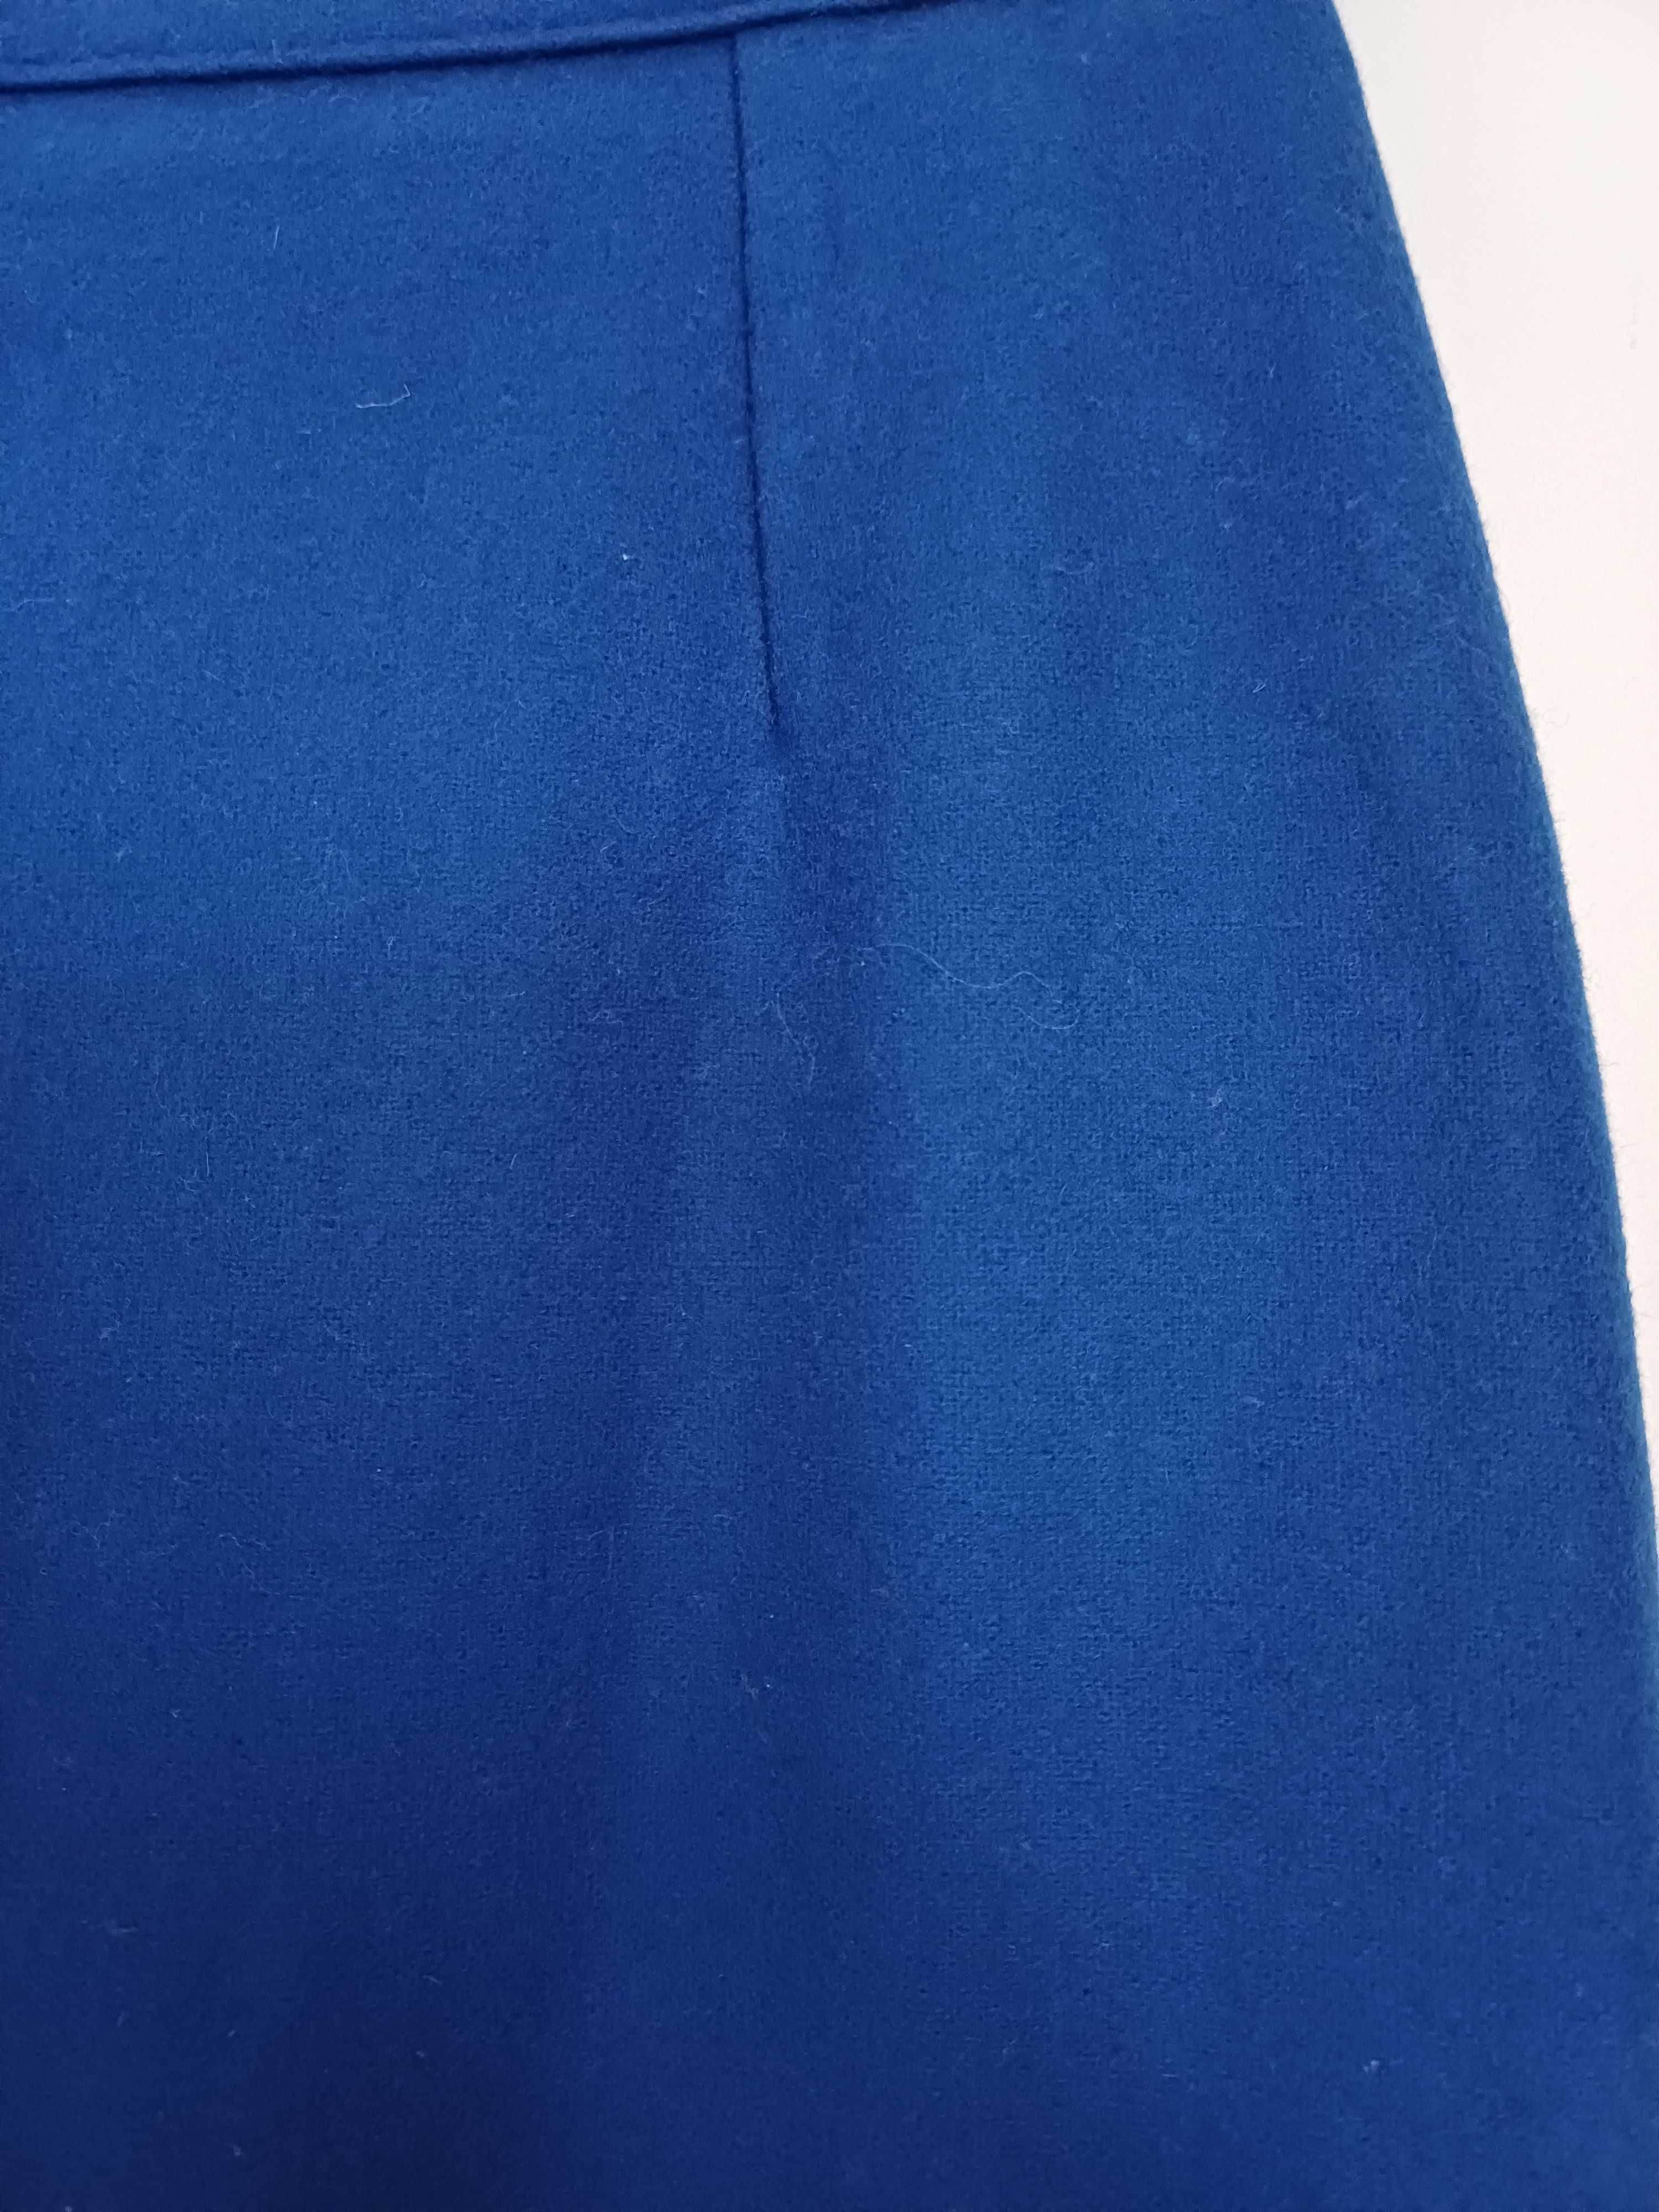 Piękna wełniana kobaltowa spódnica r. 36 wełna